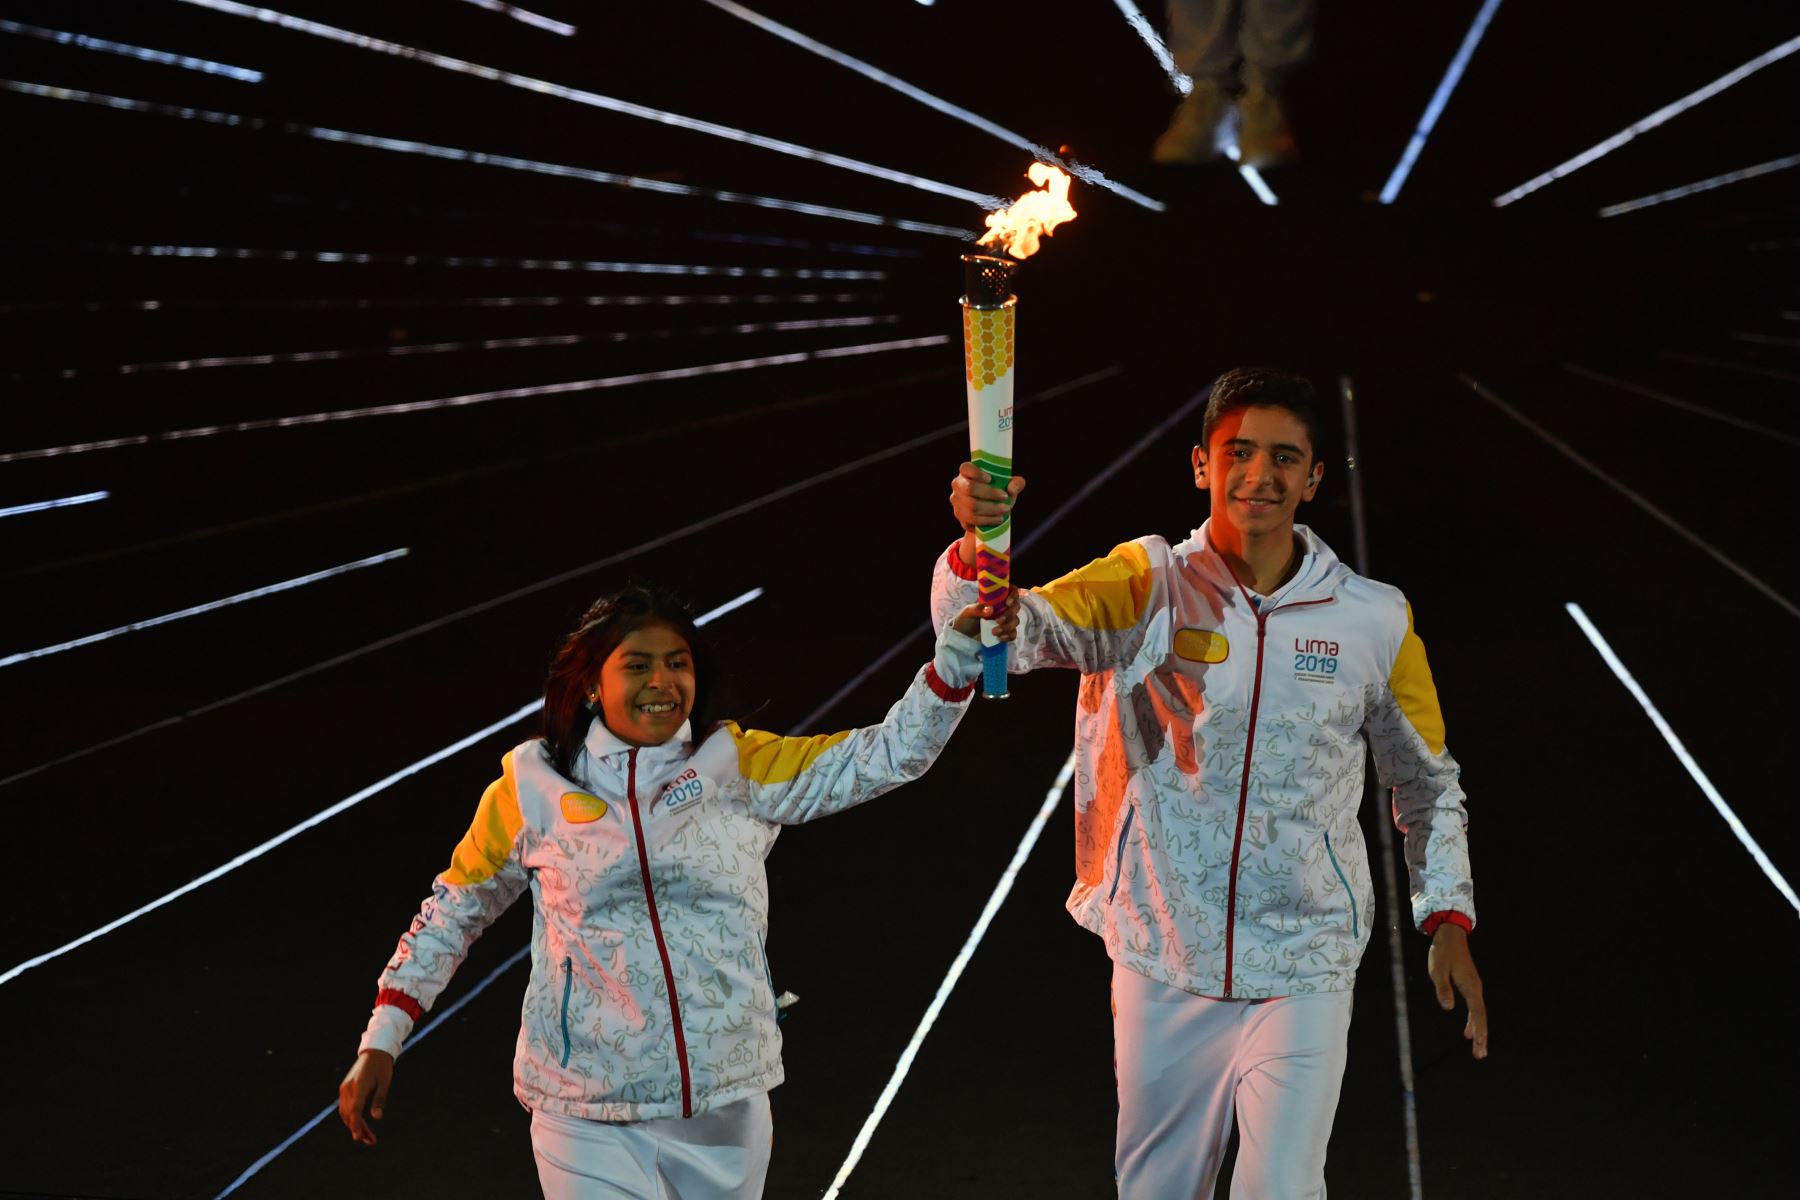 Los jóvenes atletas llevan la llama durante la ceremonia de apertura de los Juegos Panamericanos de Lima 2019 en el Estadio Nacional de Lima.
Foto: AFP